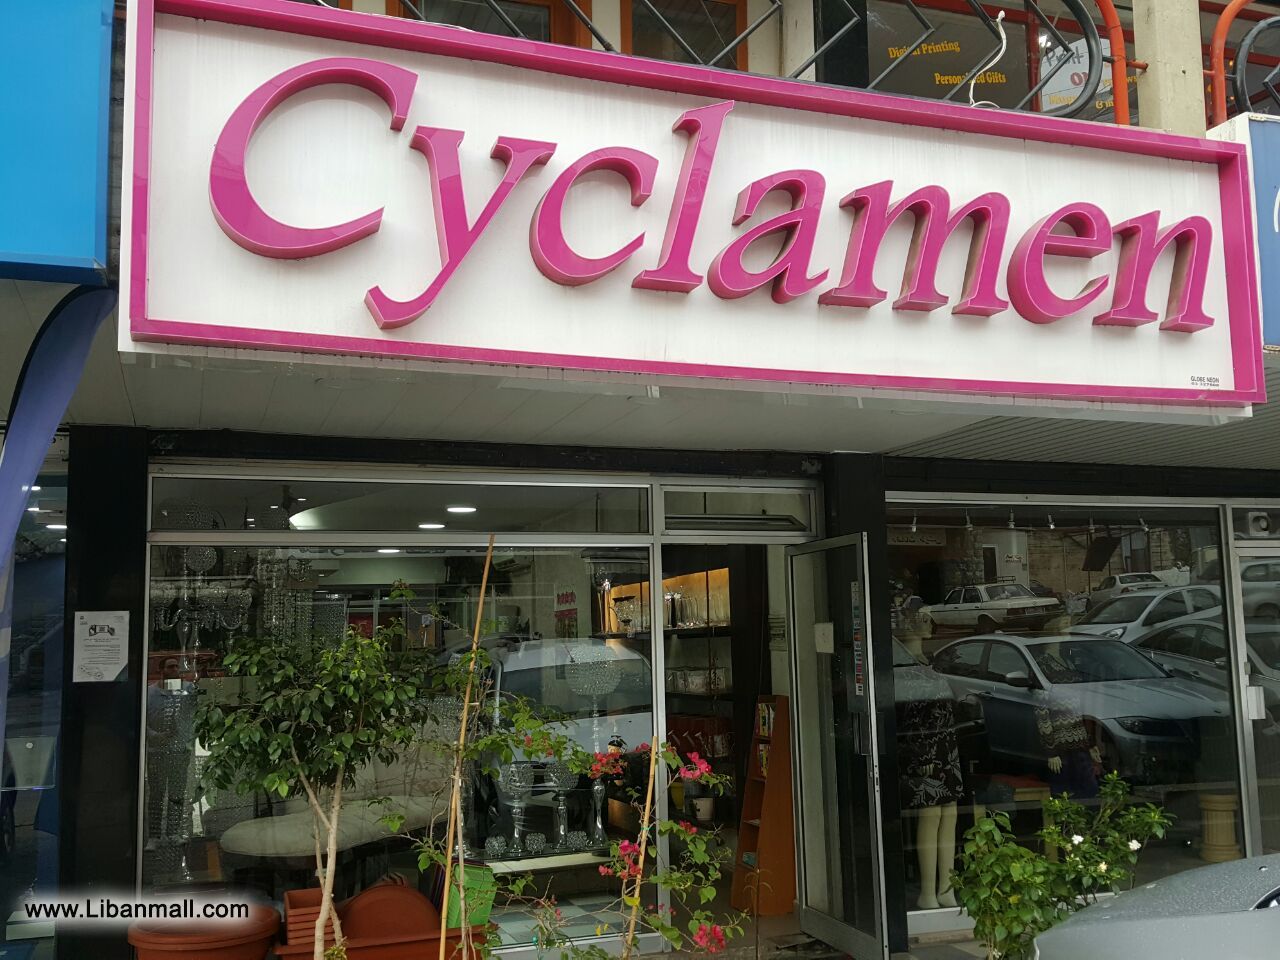 Cyclamen, florists, floral decorations, flower shop